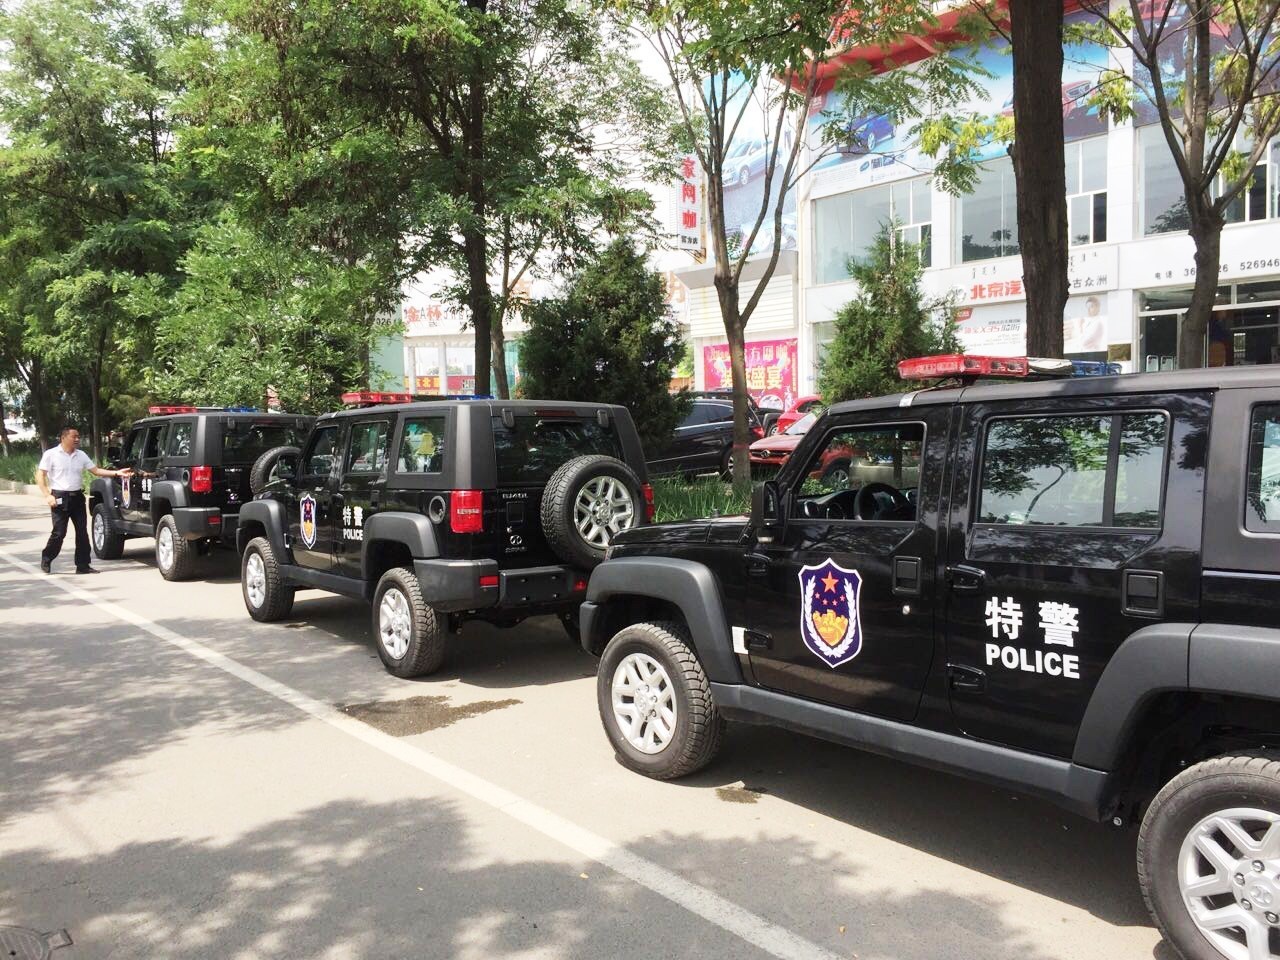 2016年6月24日, 首批北京汽车勇士改进型军车在北京汽车越野车